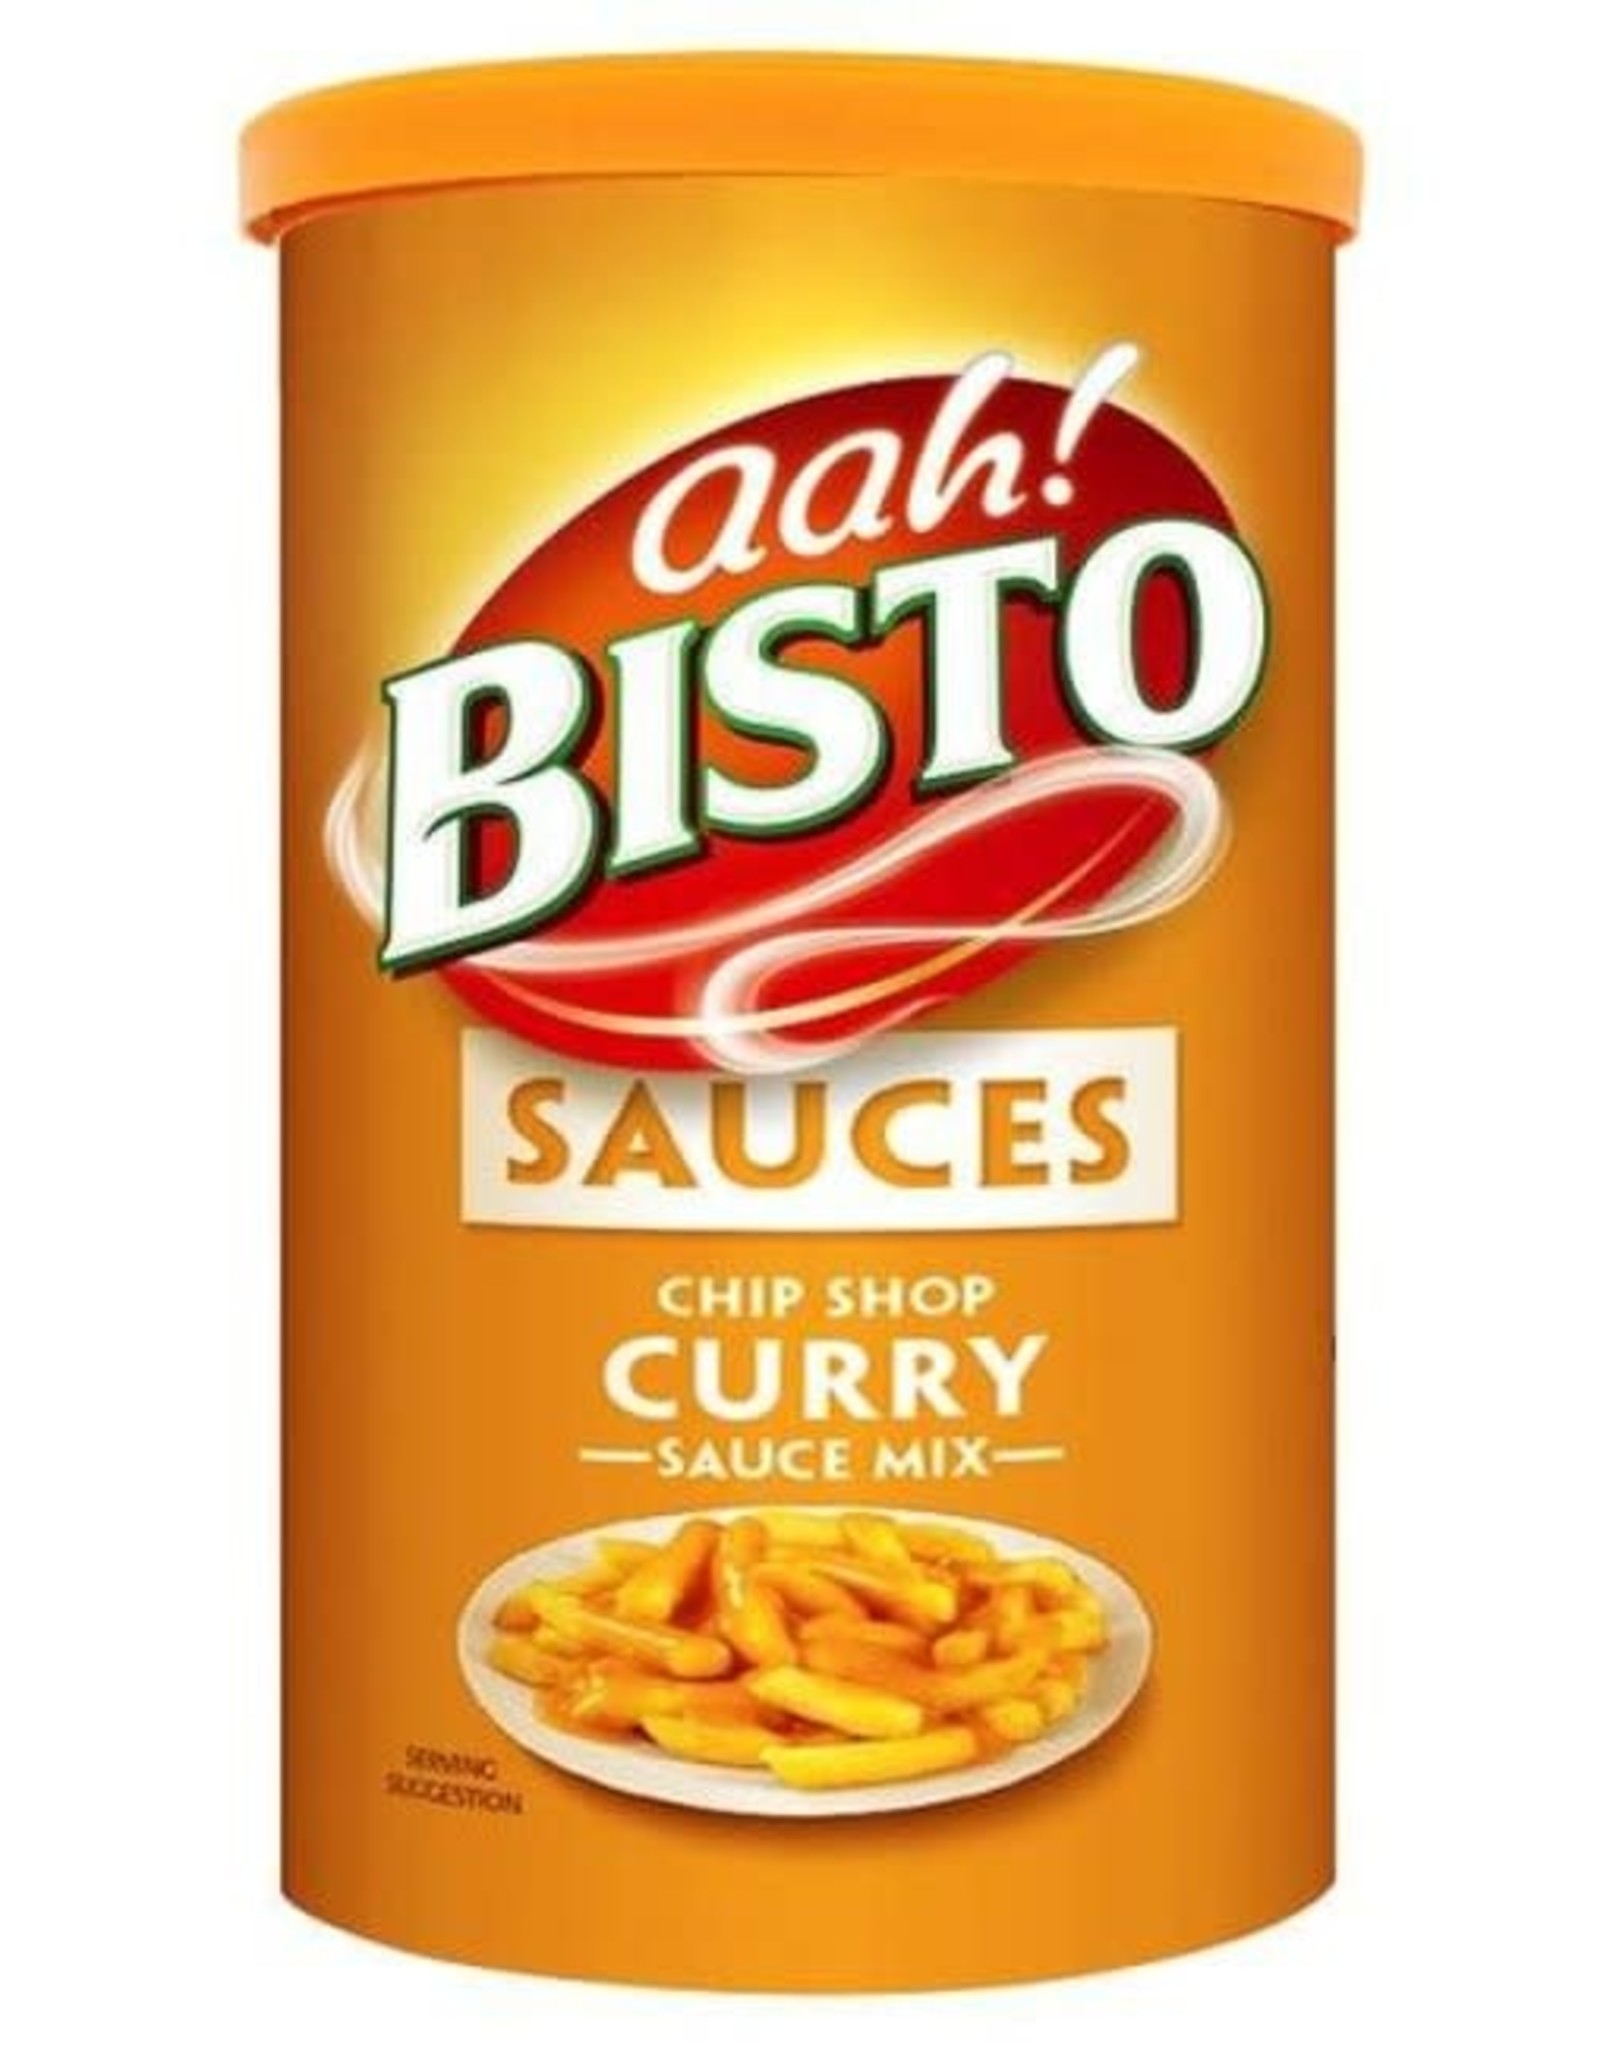 bisto Bisto Curry Sauce mix 190g